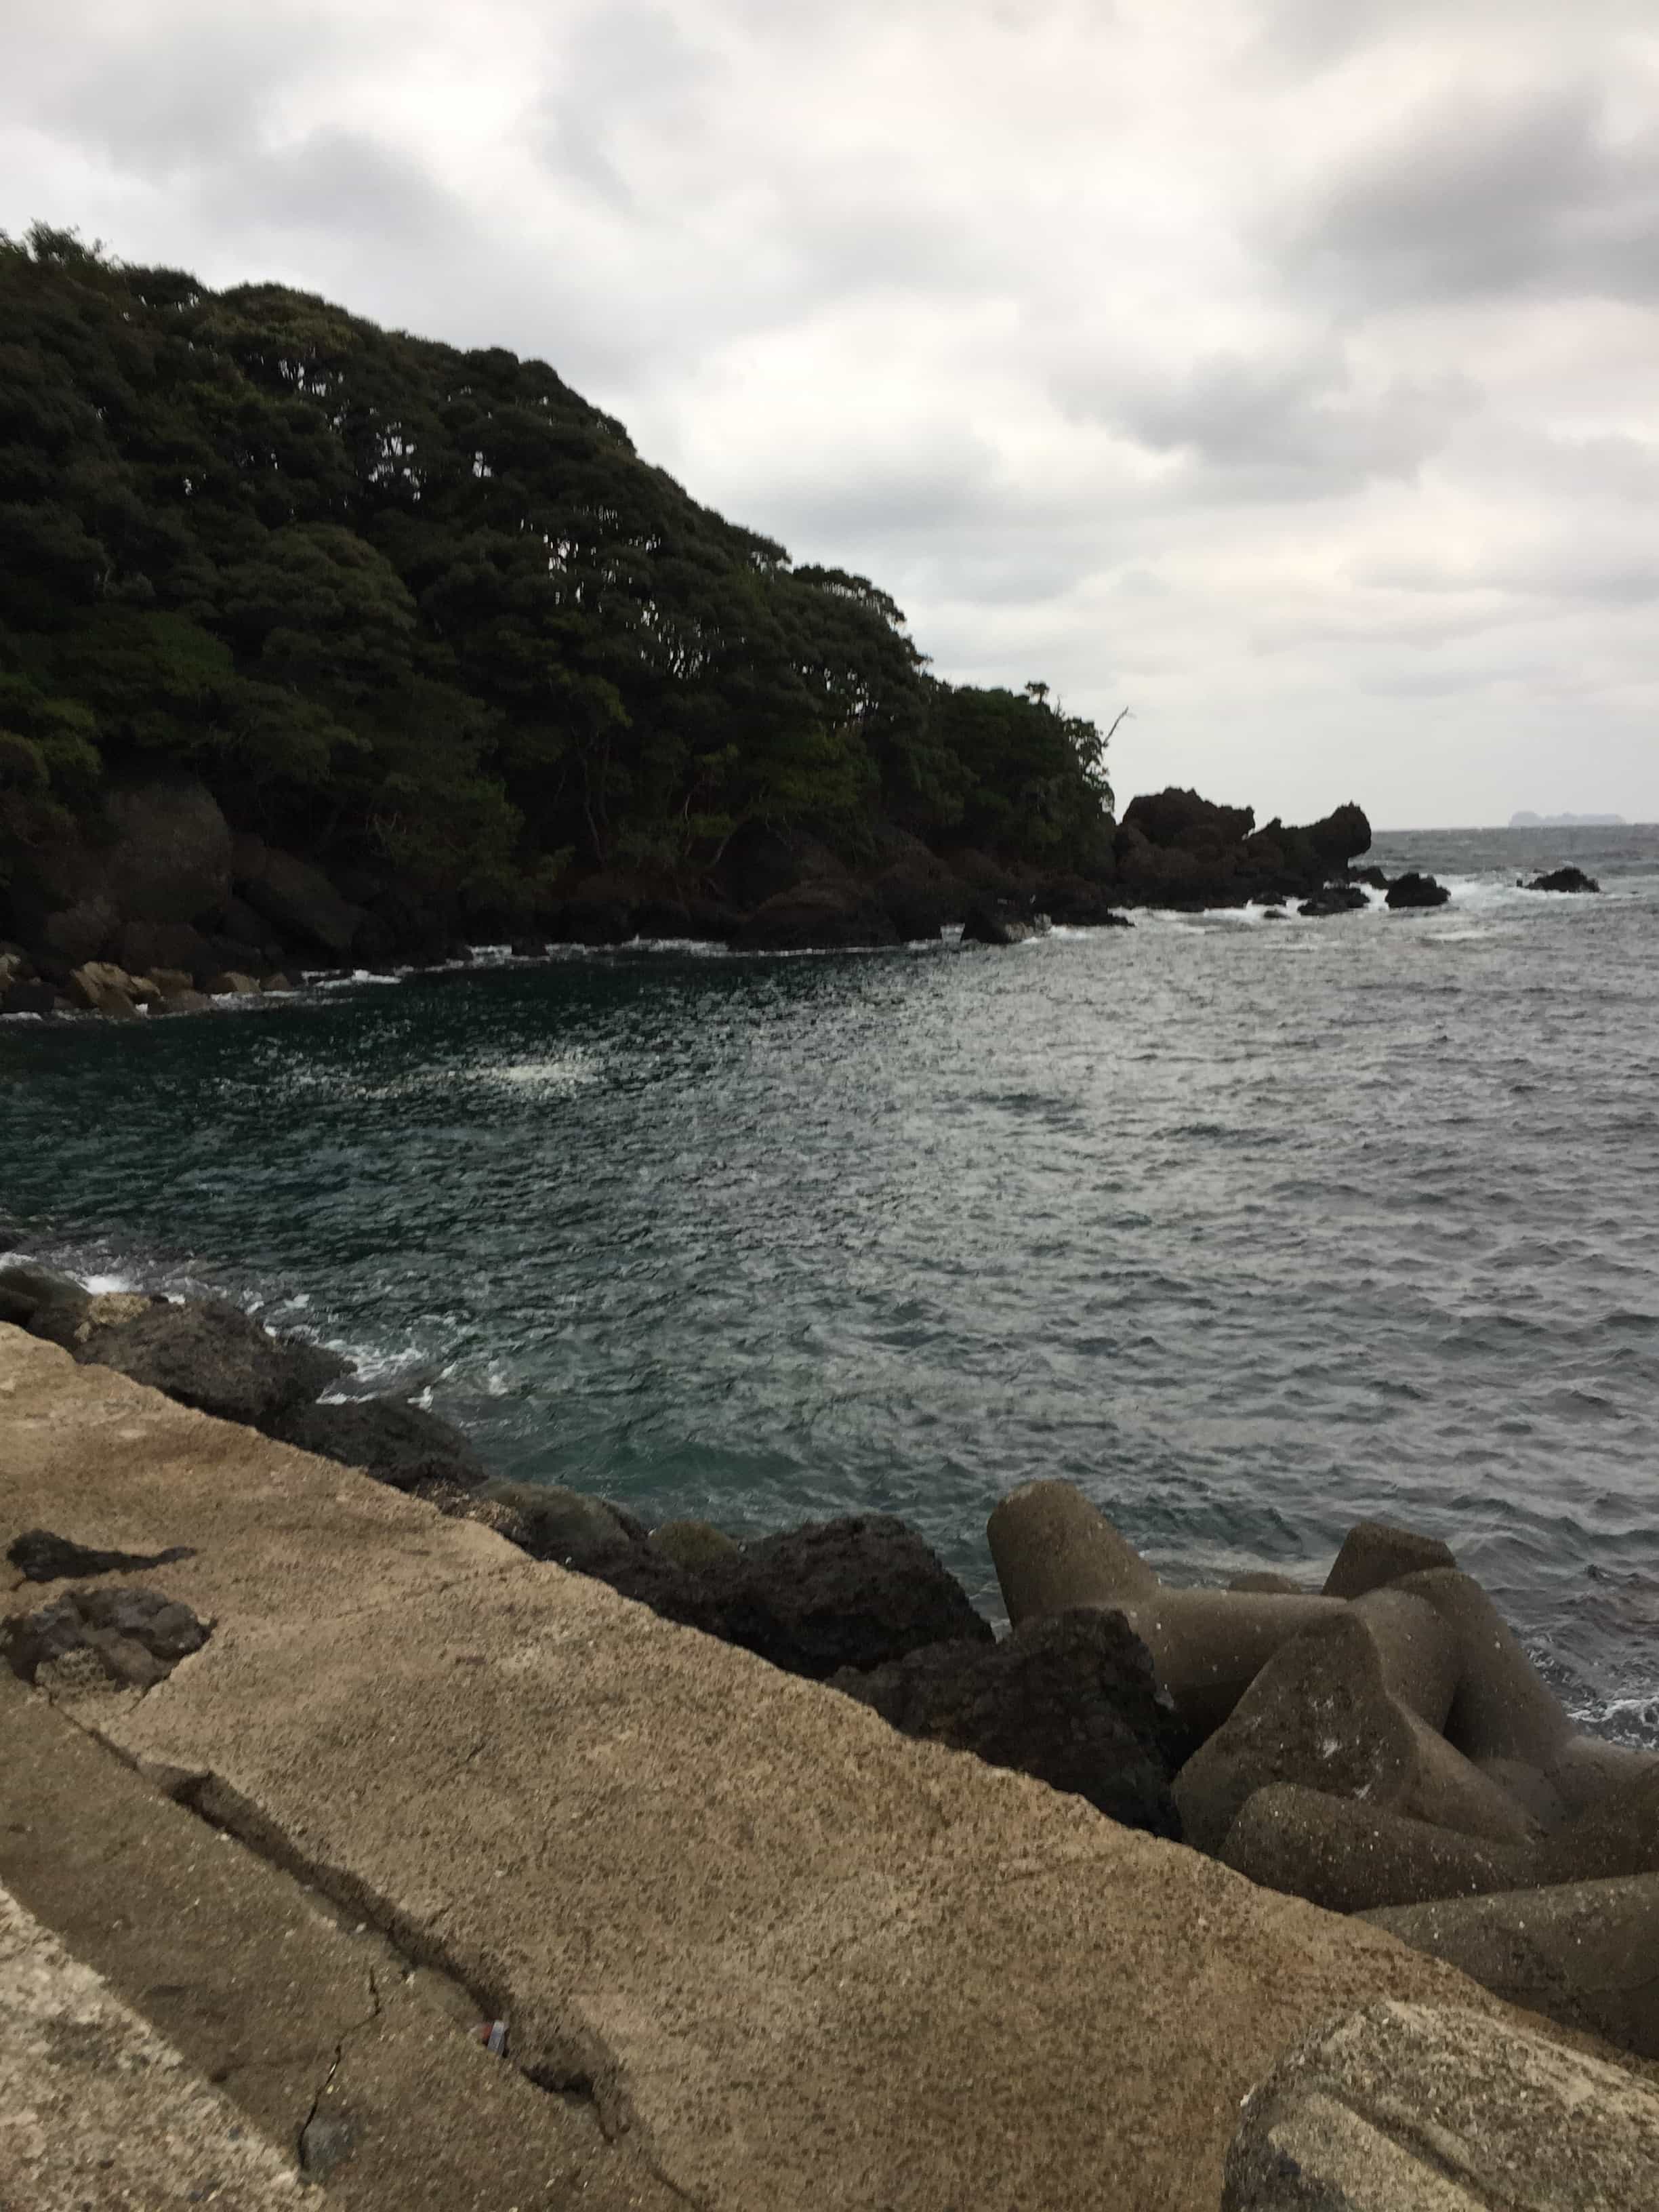 新井崎漁港の釣り場紹介、京都伊根町日本海の北西を避けれる濁りに強いエギングにオススメの漁港